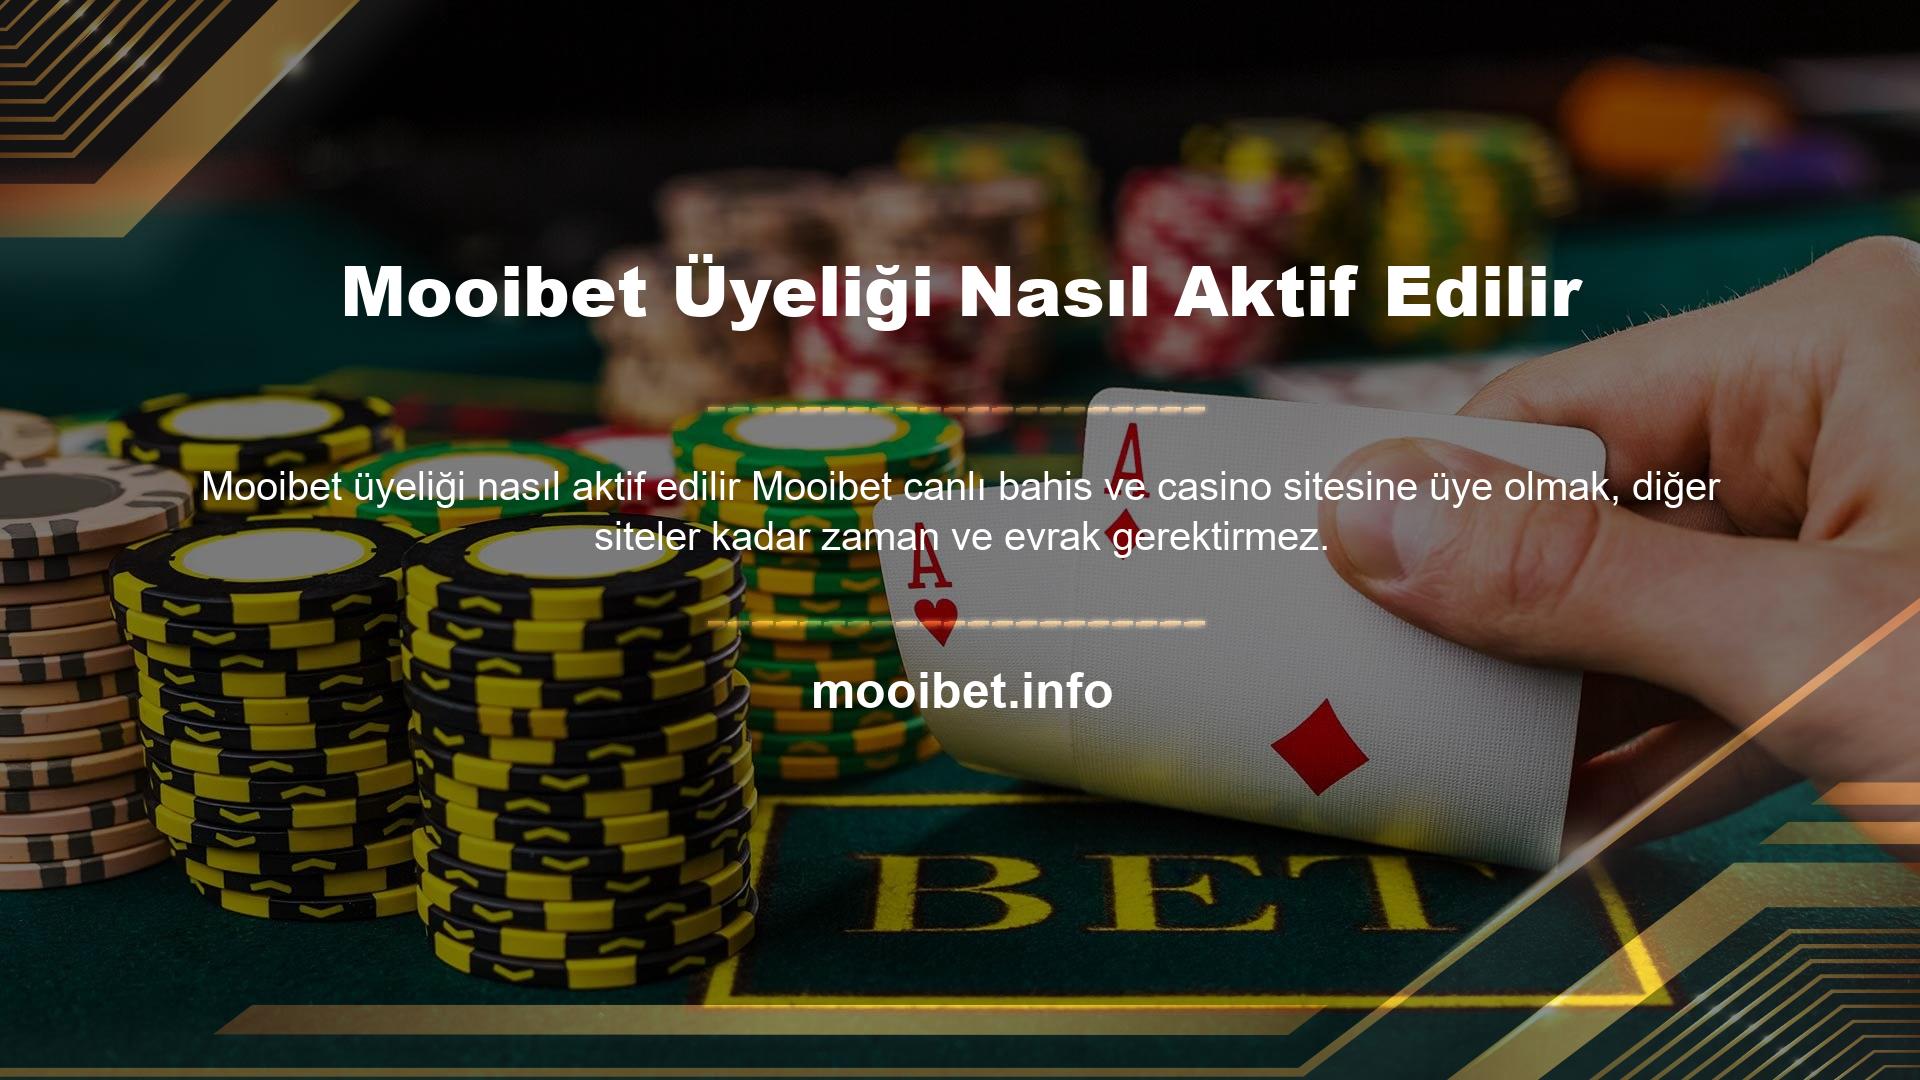 Ayrıca Mooibet, mobil uyumlu bir web sitesine ve Android telefonlar için bir uygulamaya sahip olduğu için her yerde bulunur